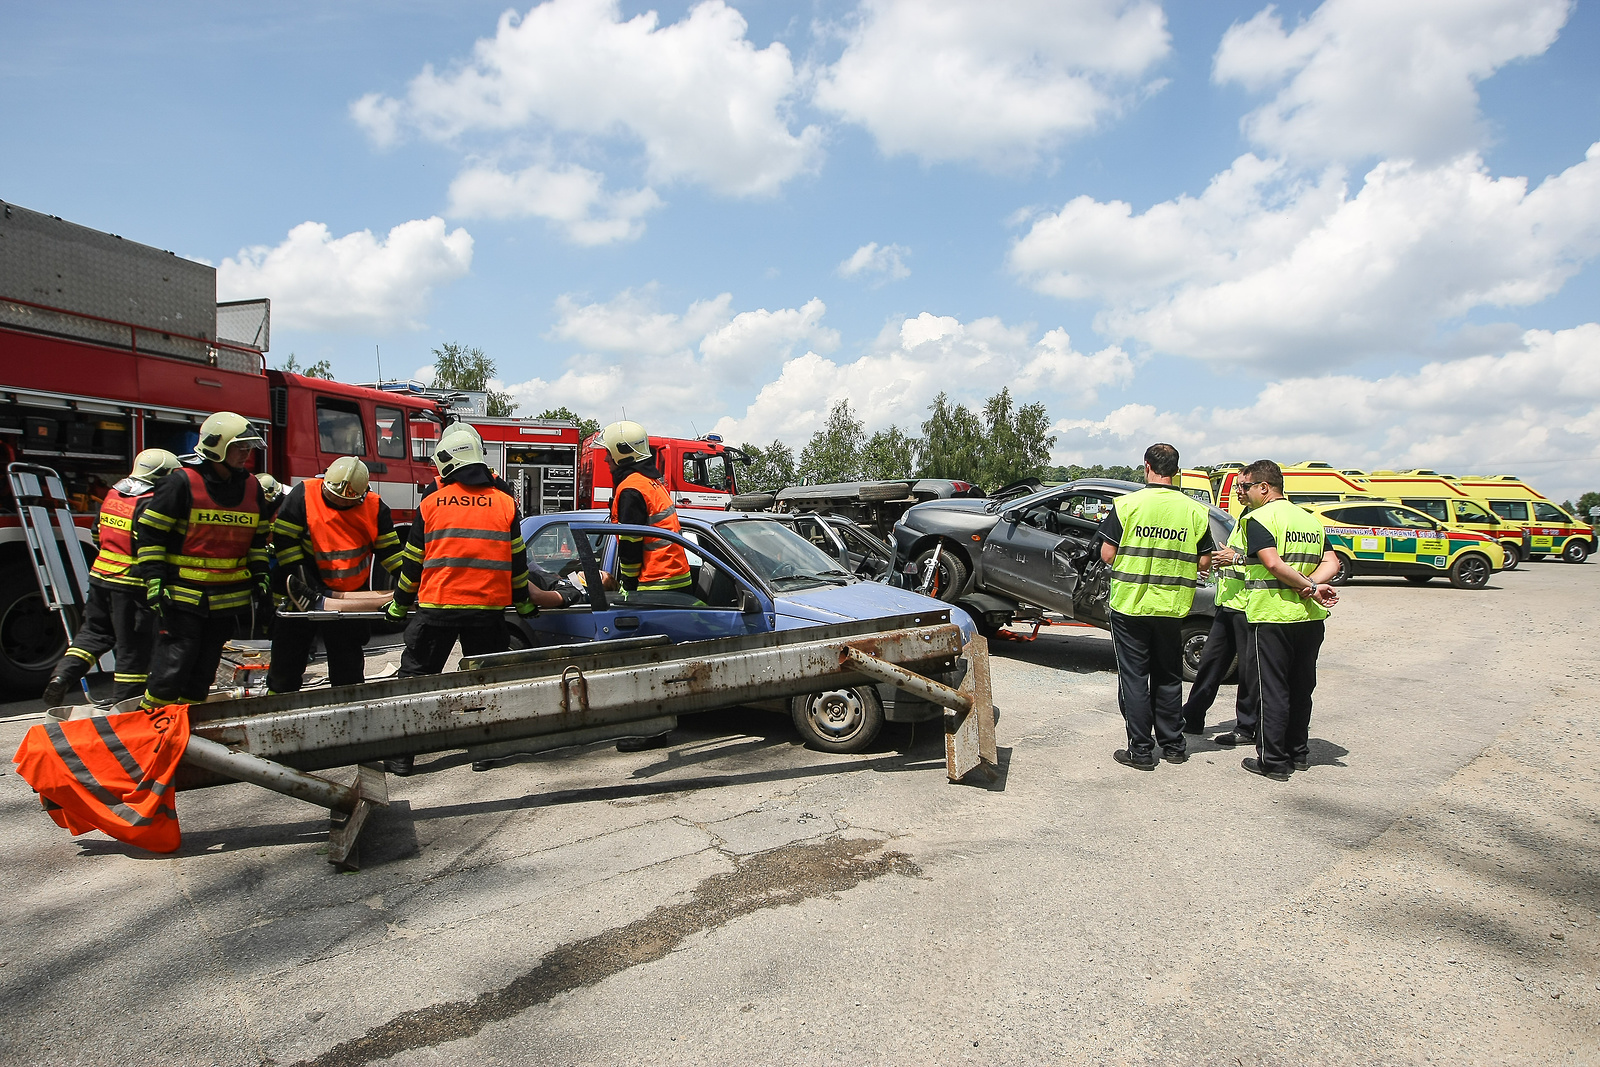 Hromadná dopravní nehoda. Takovou podobu mělo cvičení záchranářů v Kamenici  - Třebíčský deník